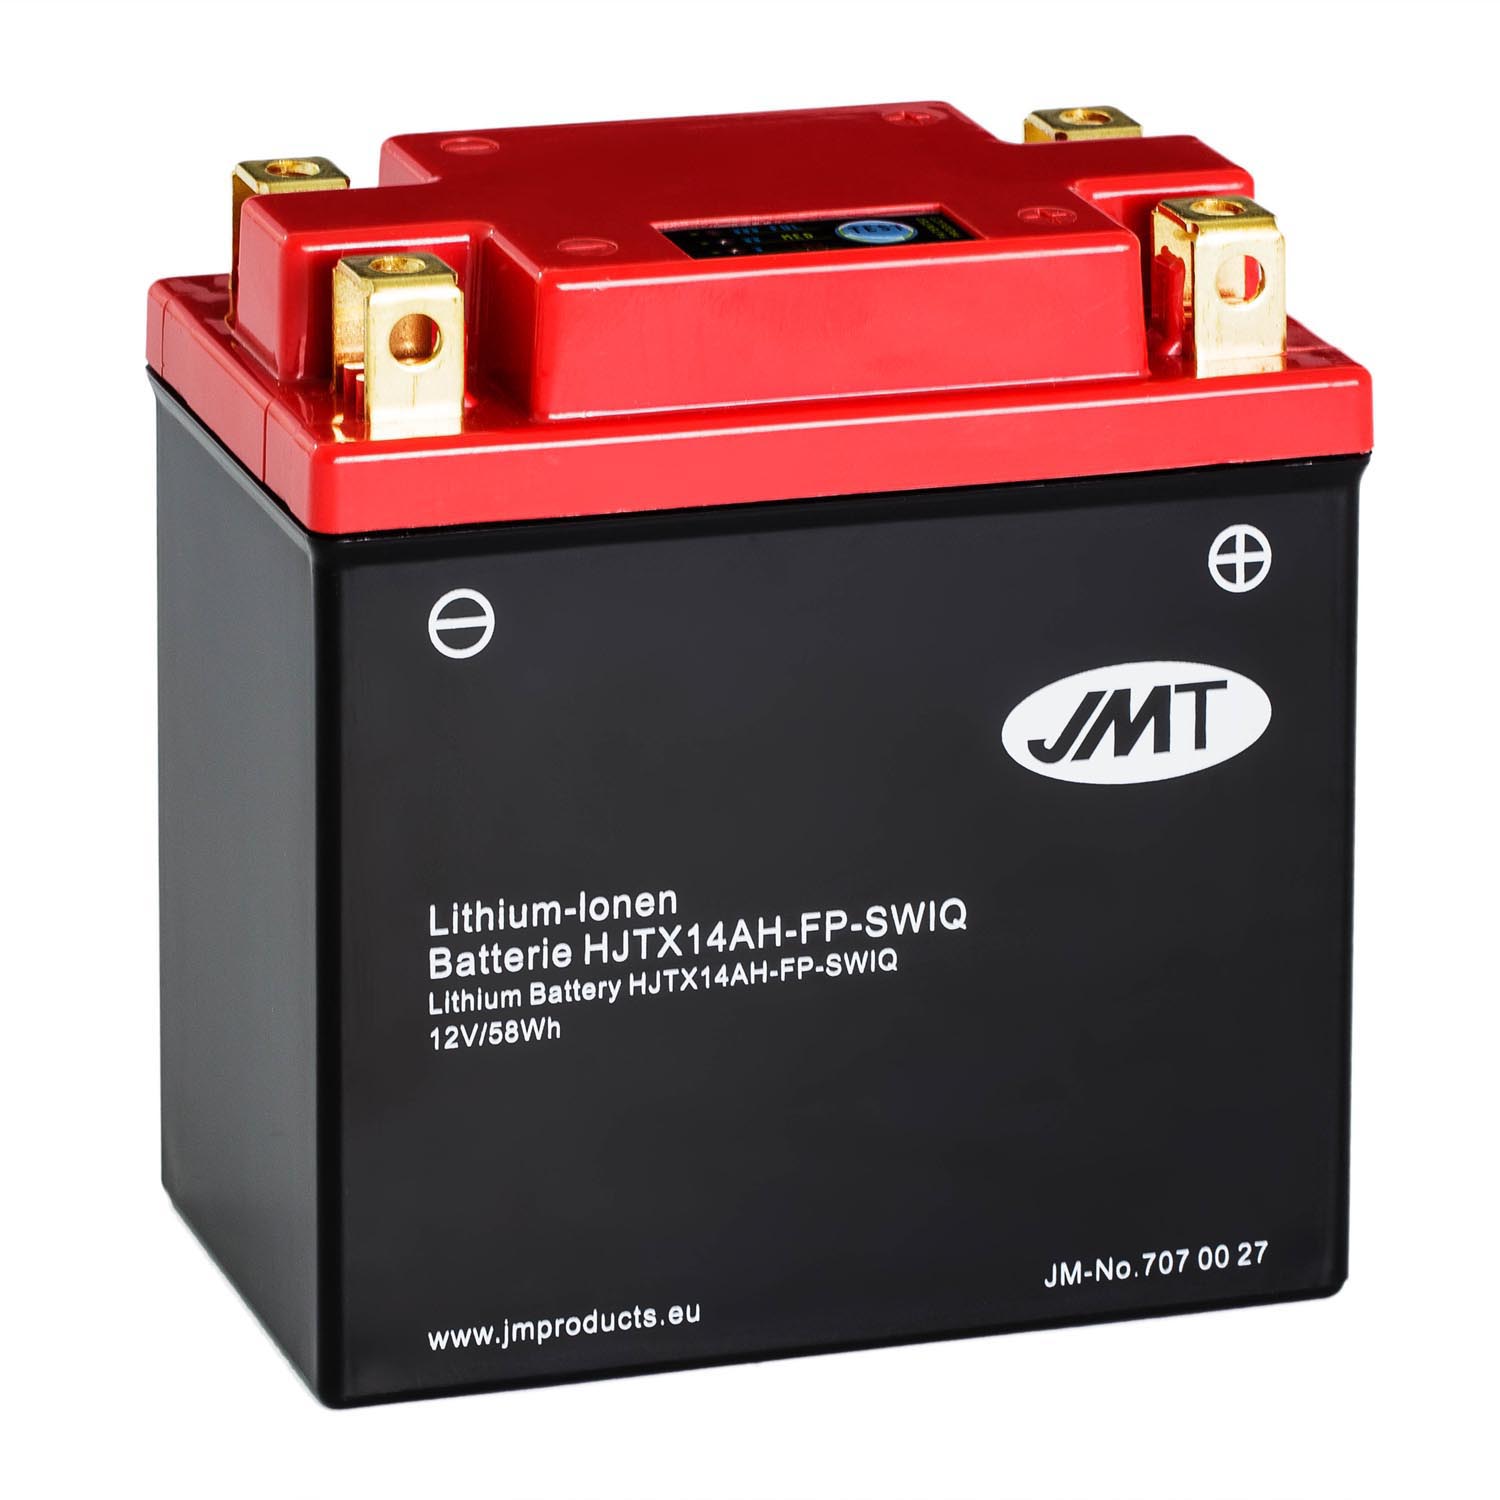 JMT Lithium-Ionen-Motorrad-Batterie HJTX14AH-FP 12V